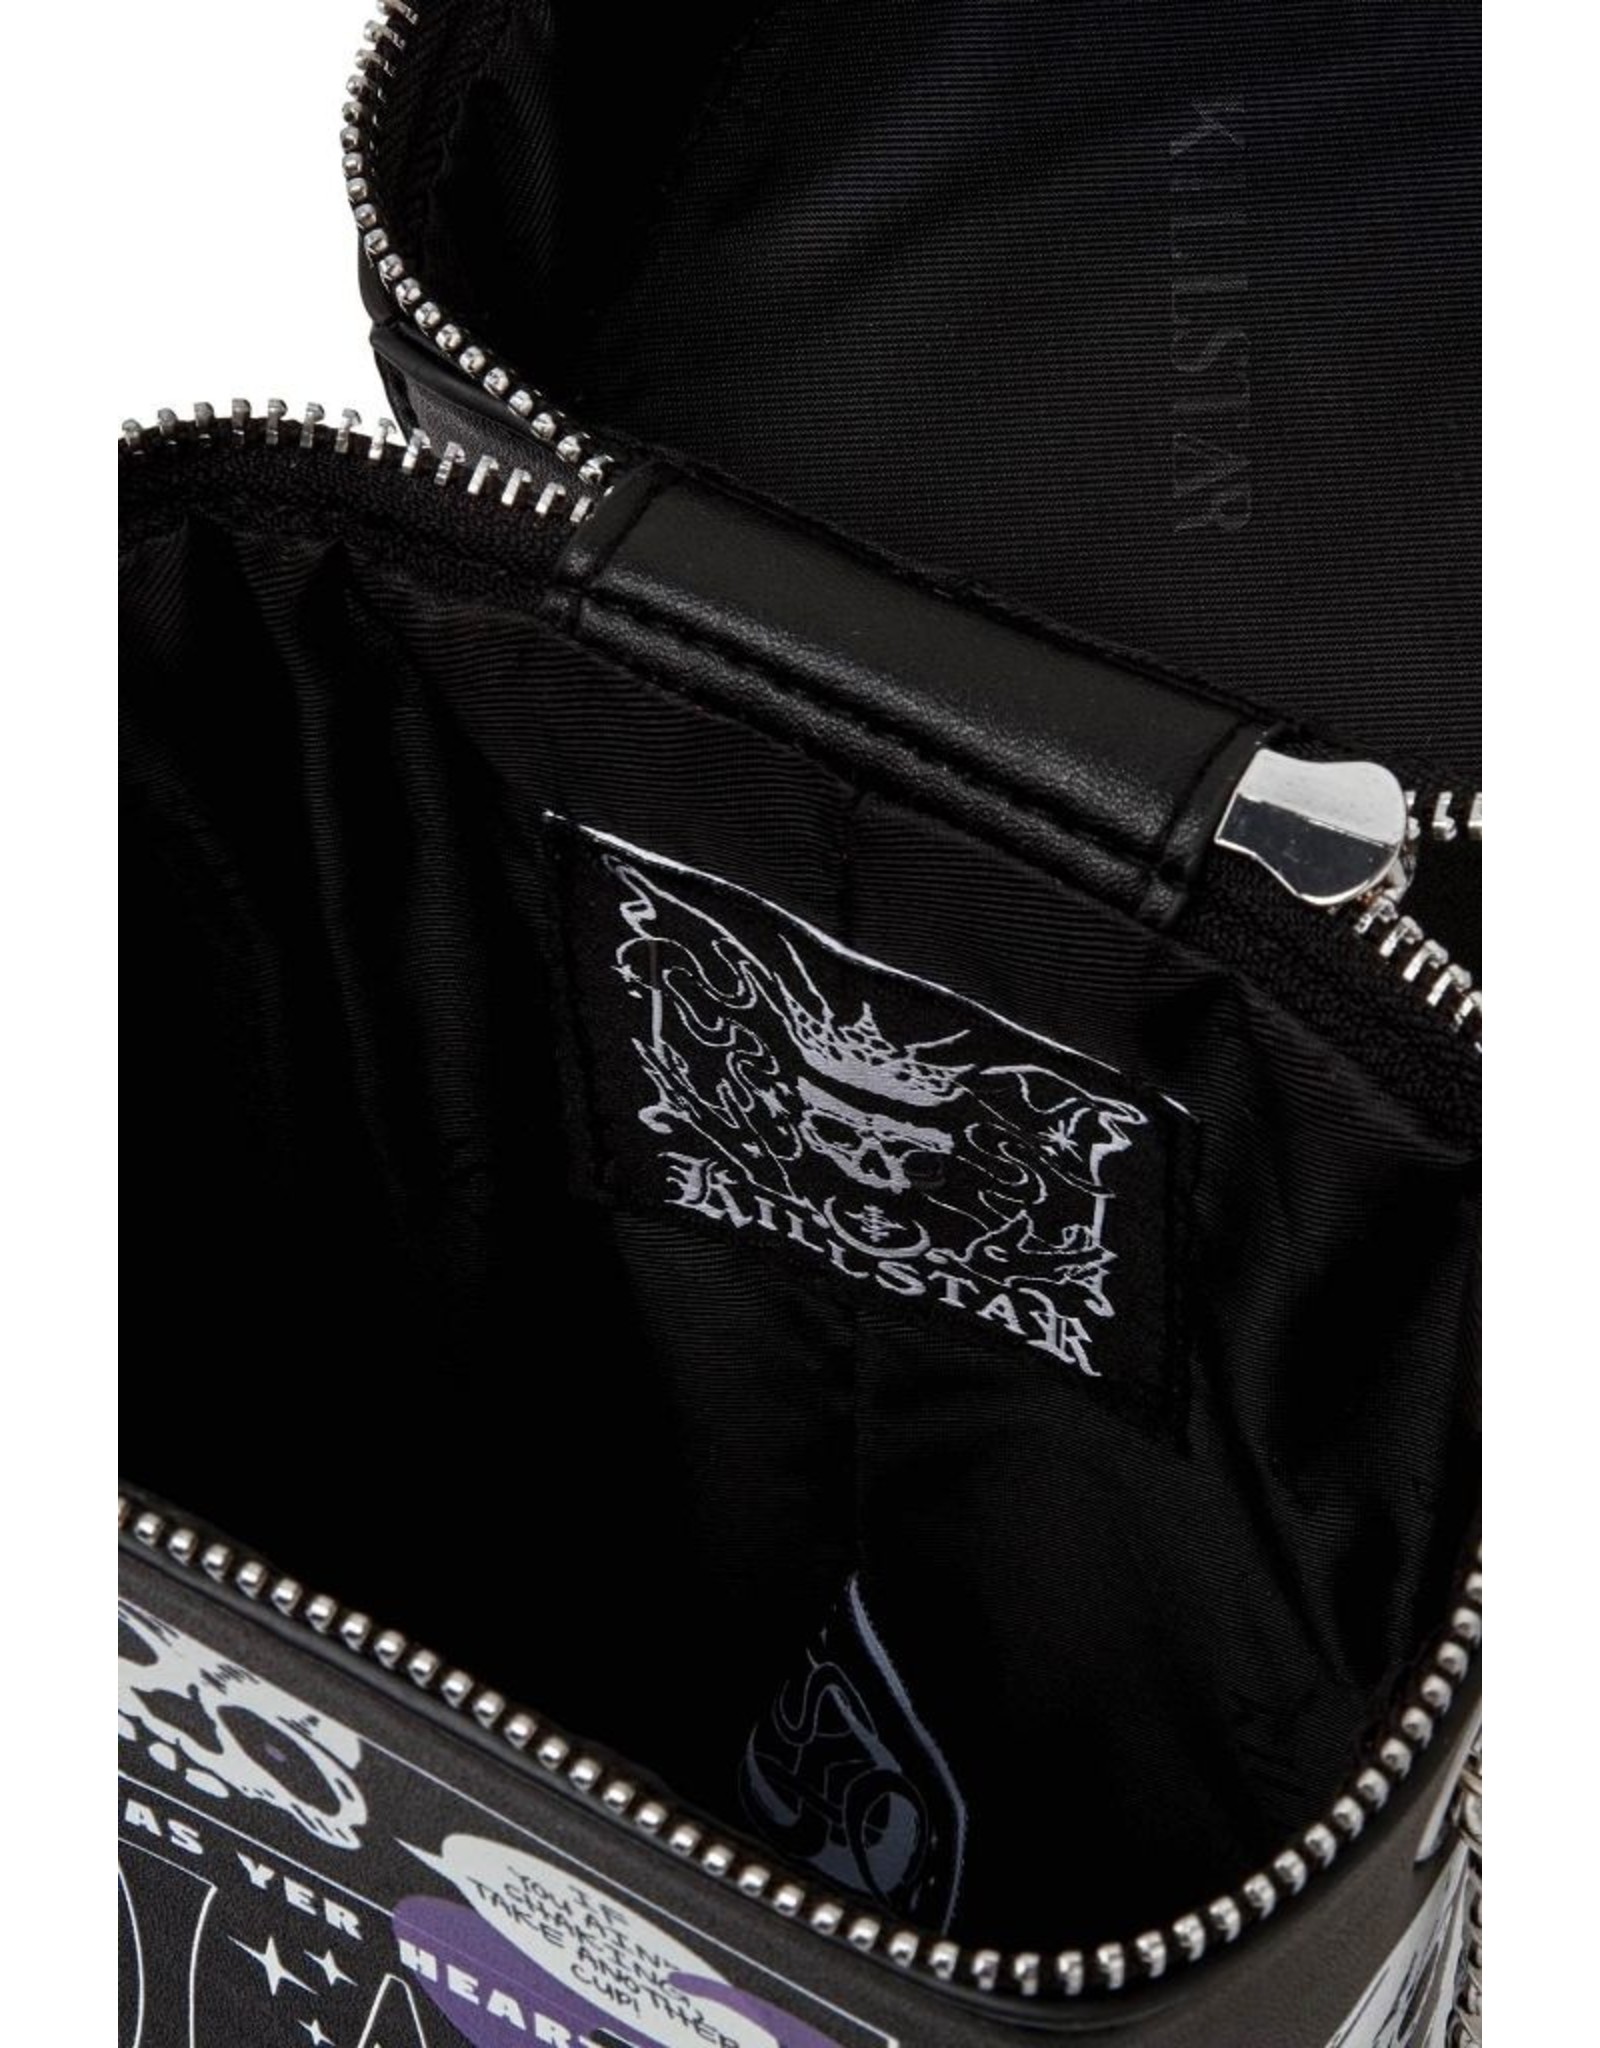 Killstar Killstar bags and accessories - Killstar Black Magic handbag